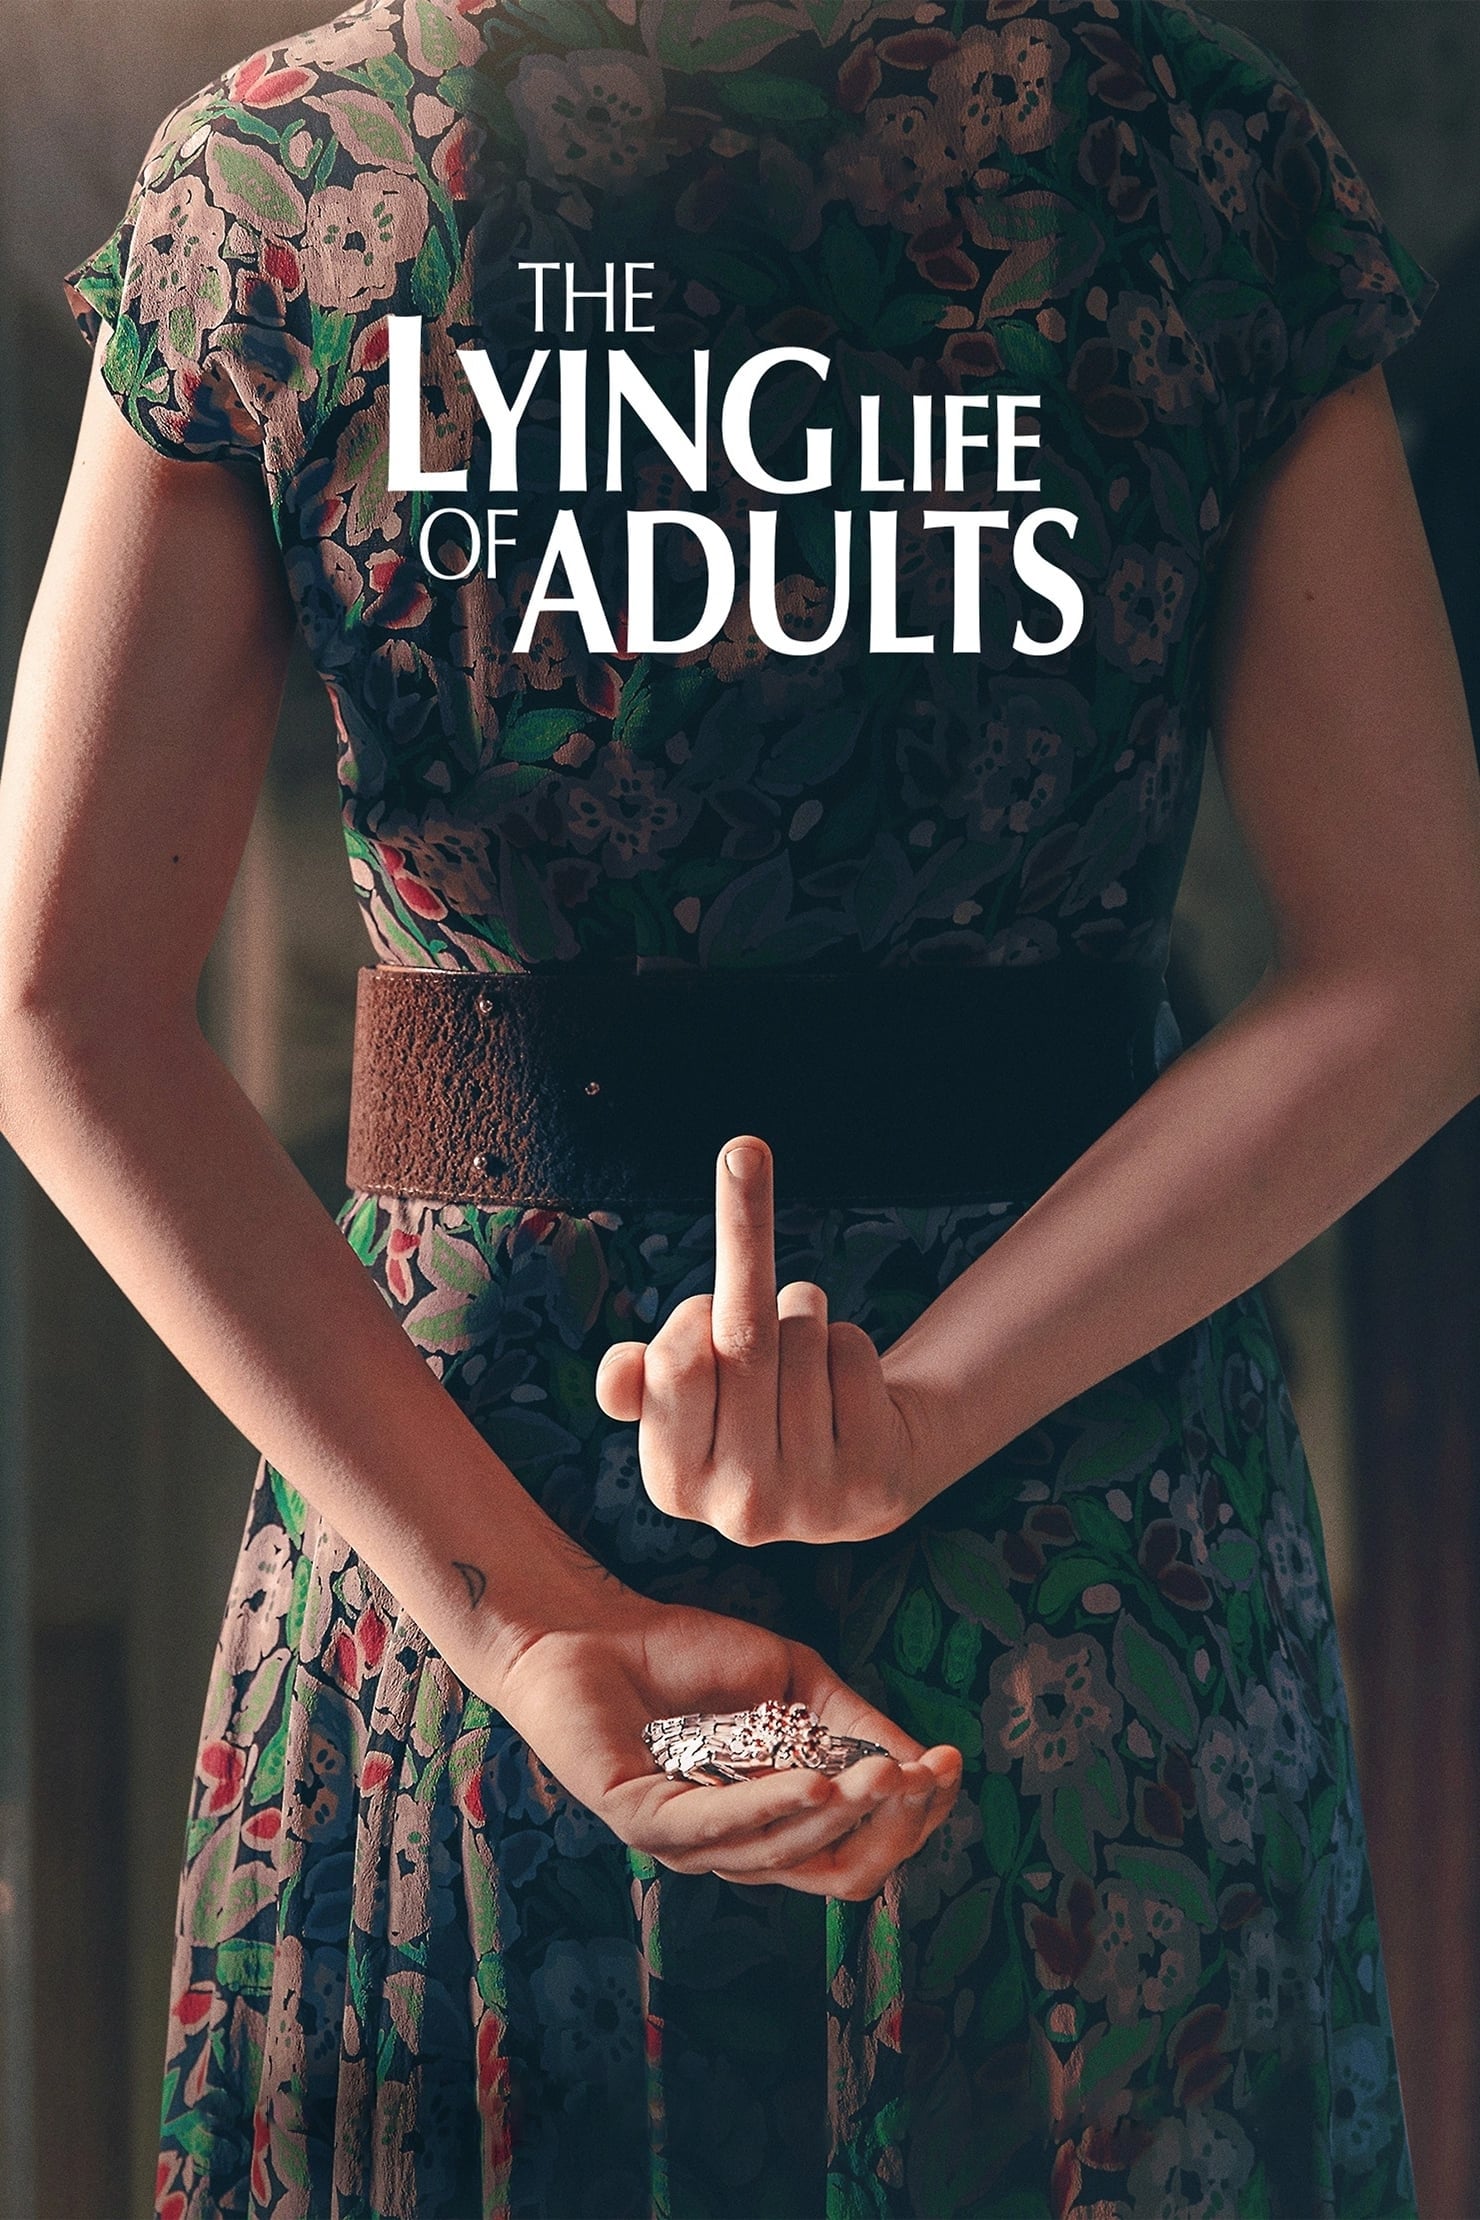 La vida mentirosa de los adultos